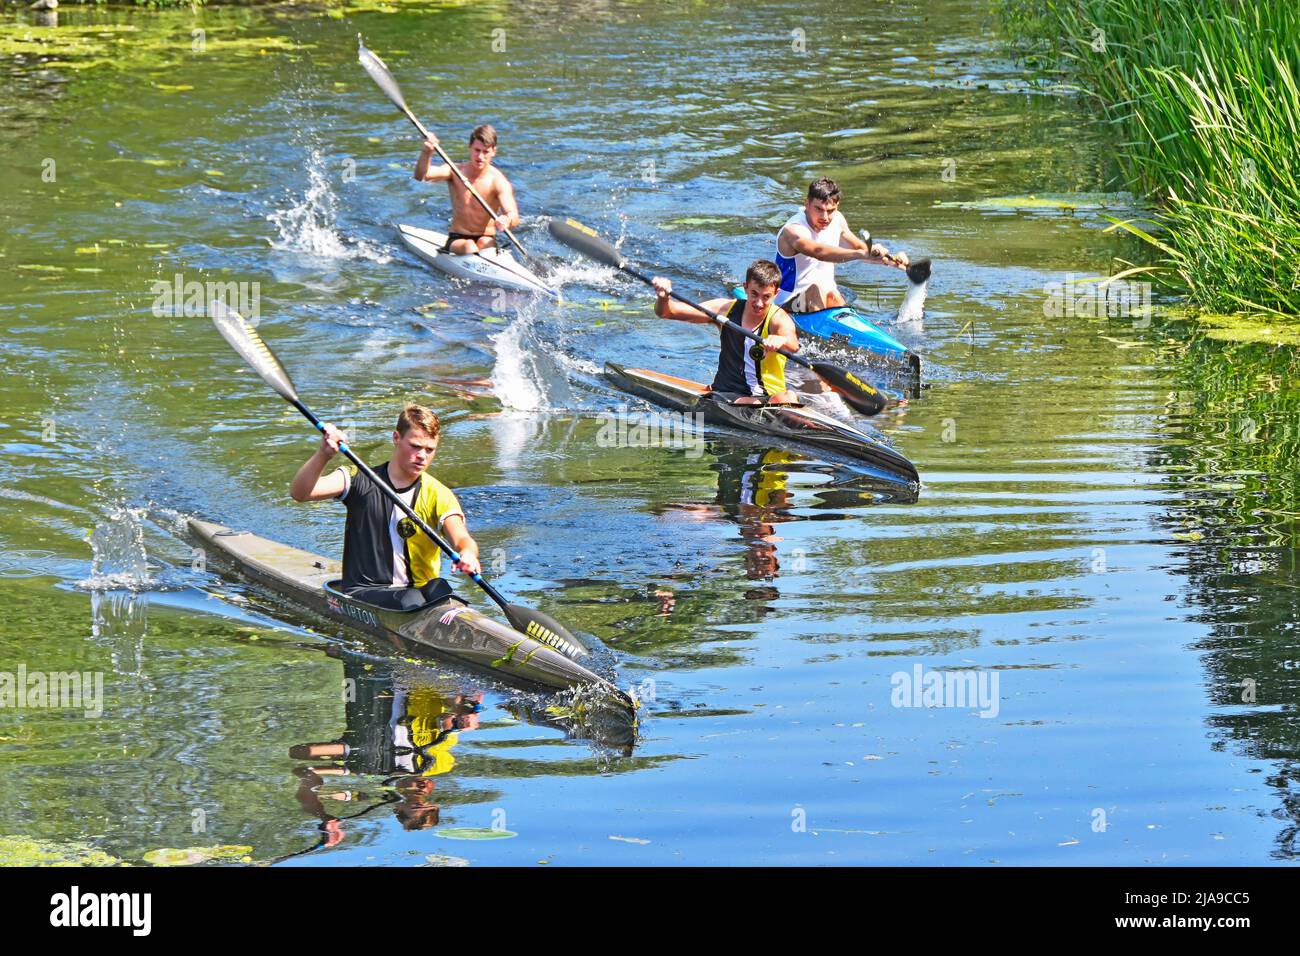 Vue d'été vue d'en haut sur un groupe de quatre jeunes hommes enthousiastes pagayant des kayaks sur Calm River Chelmar dans Chelmsford Essex Angleterre Banque D'Images